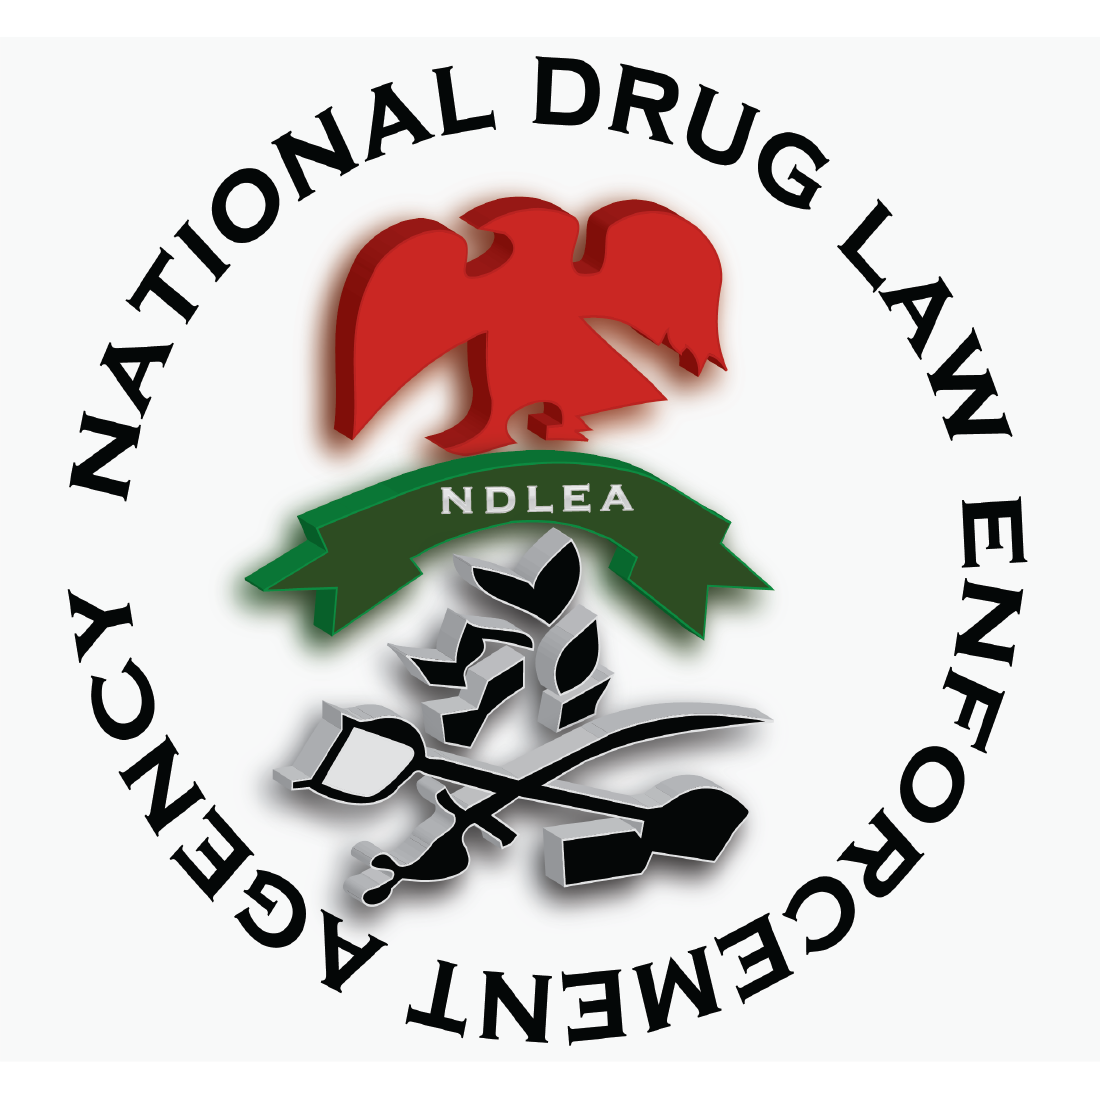 National drug Law (Logo) Design preview image.